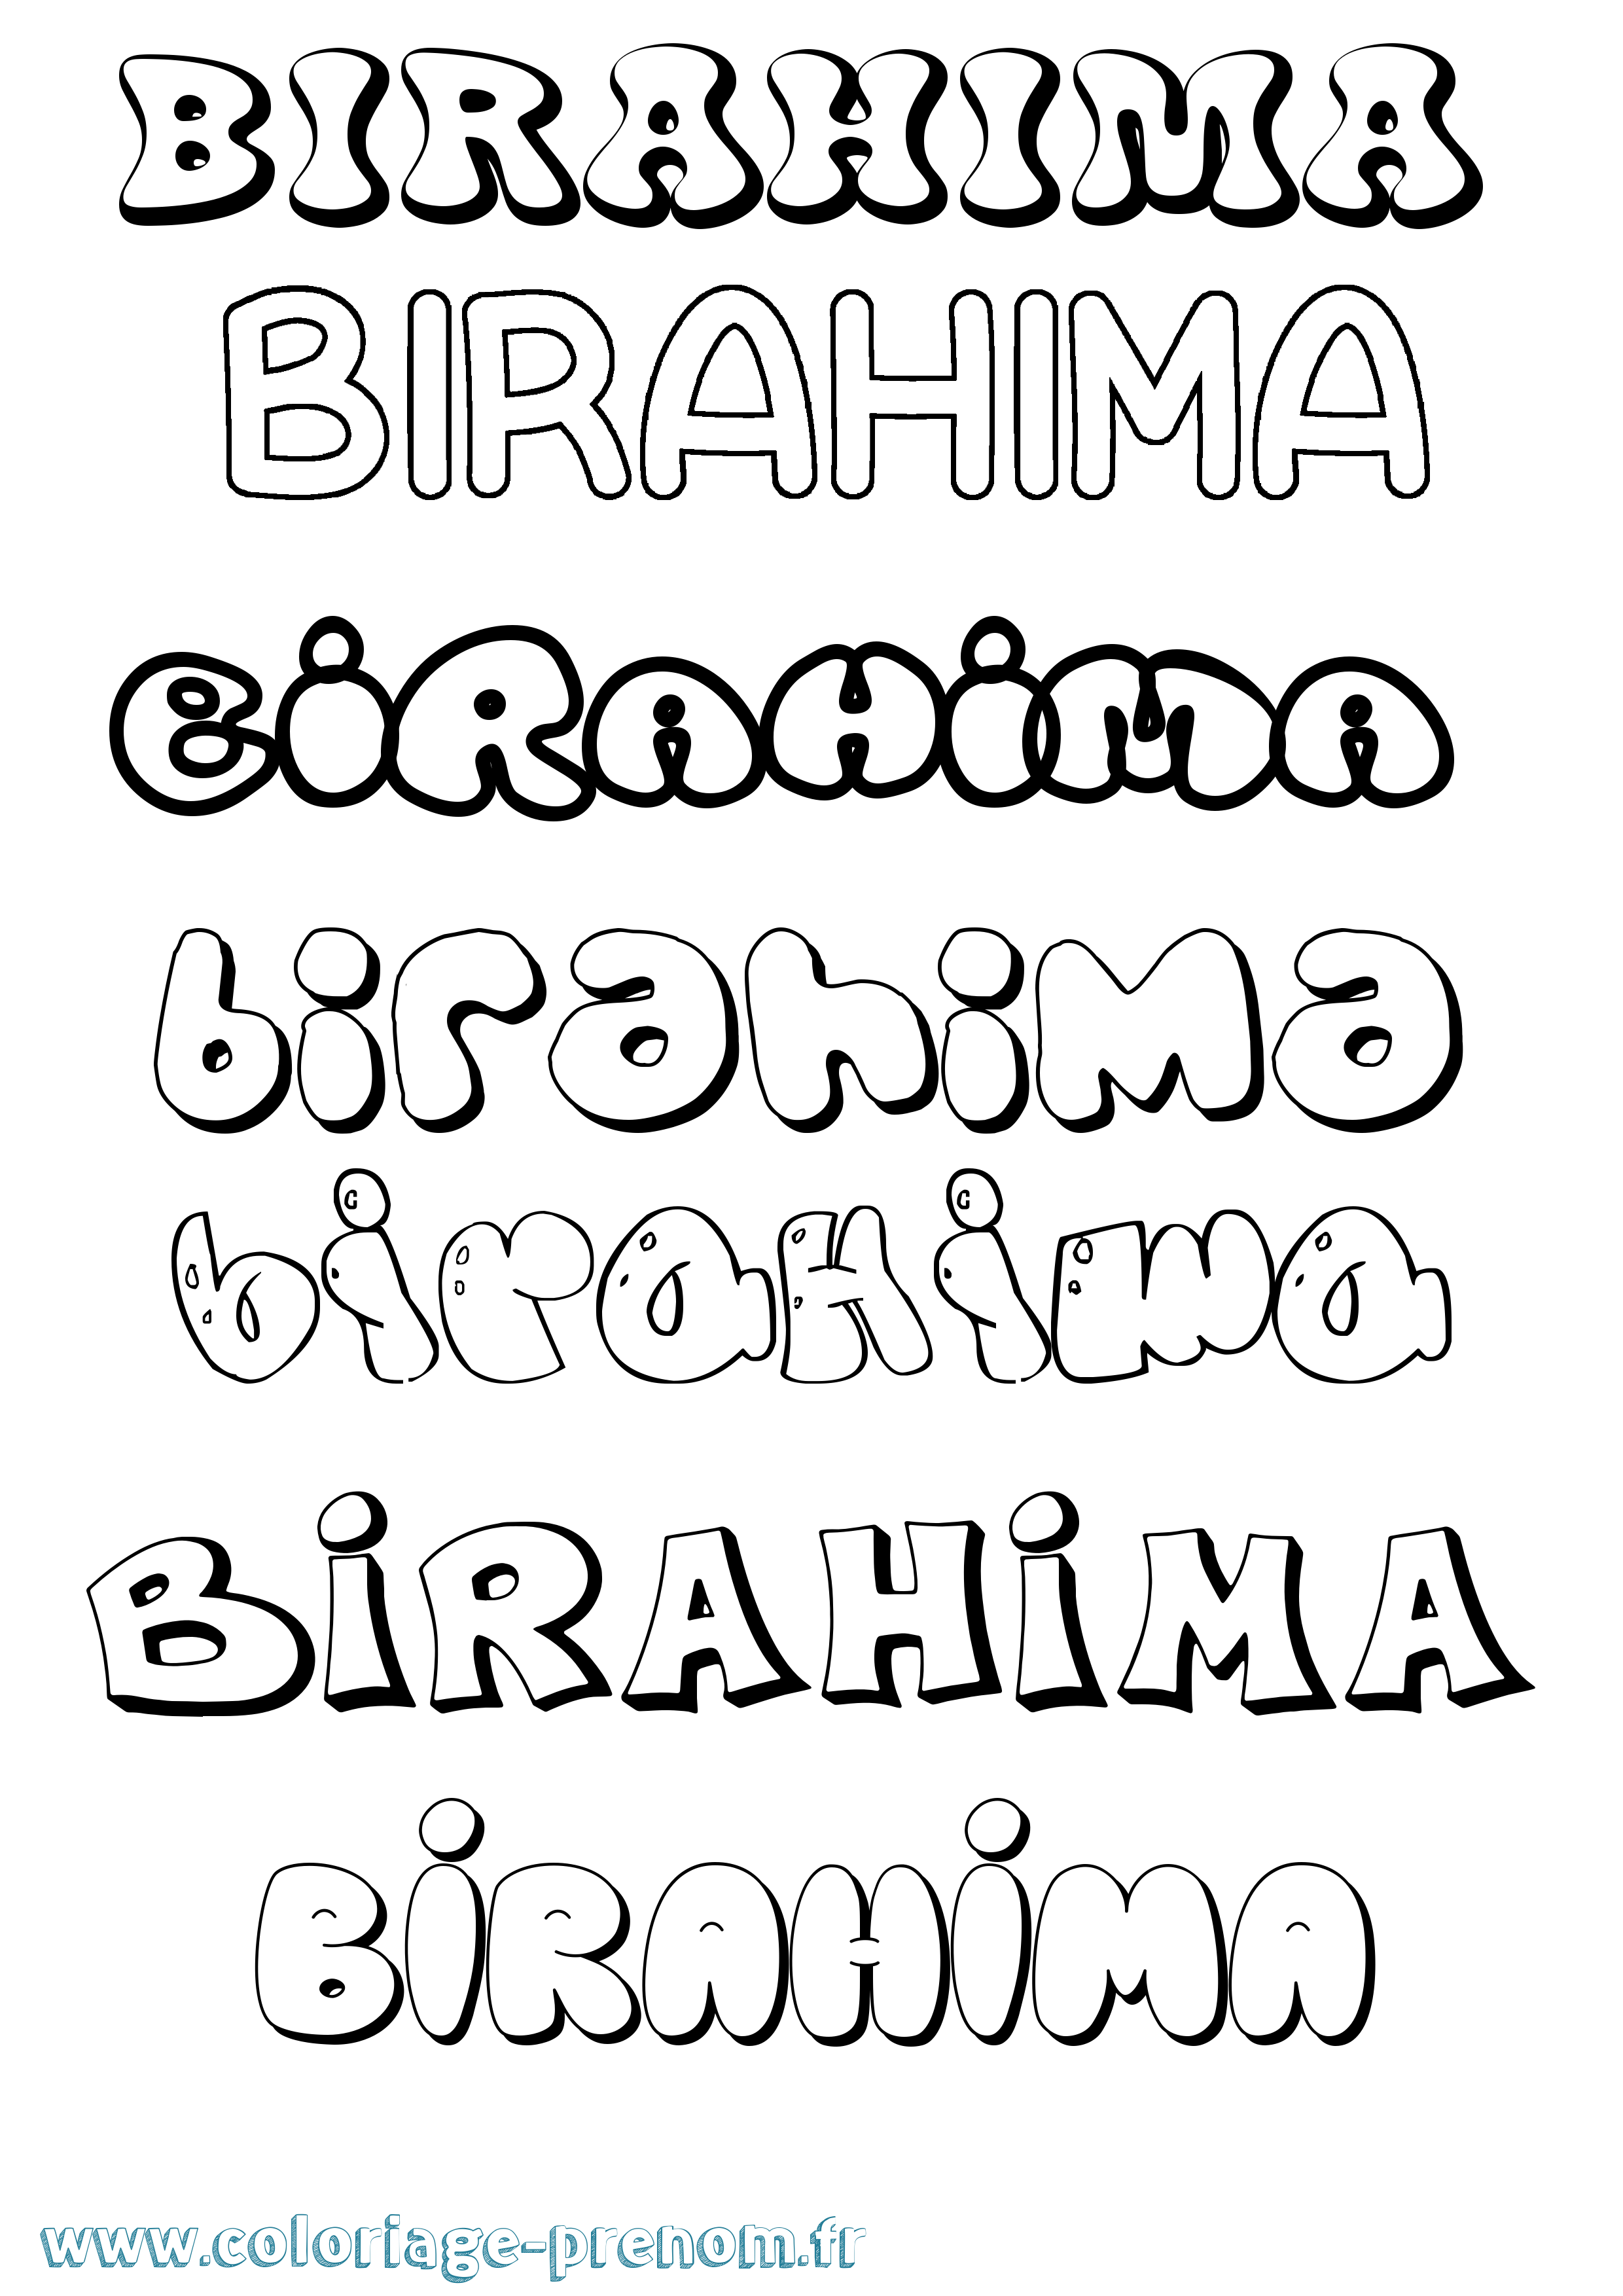 Coloriage prénom Birahima Bubble